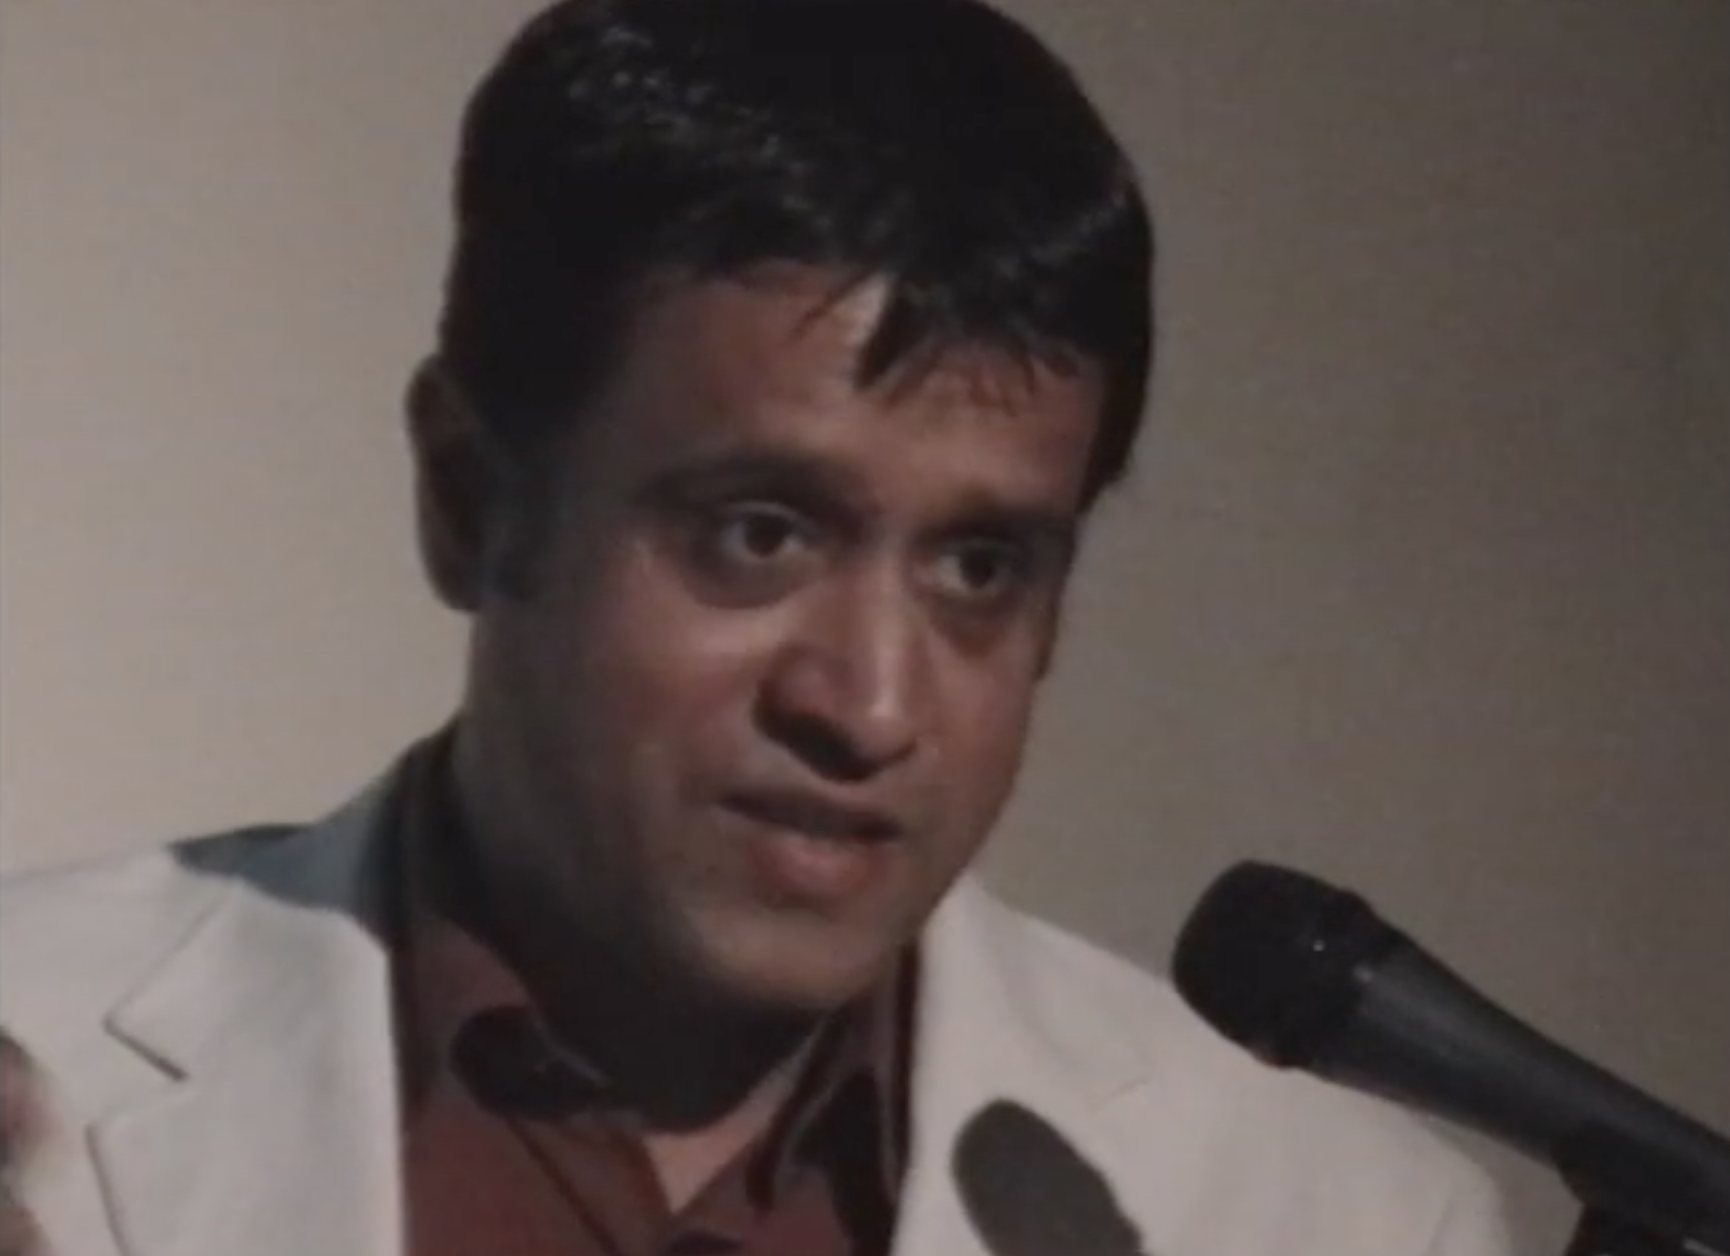 Dr. Shailen Bhandare, "Not Just a Pretty Face" 2007